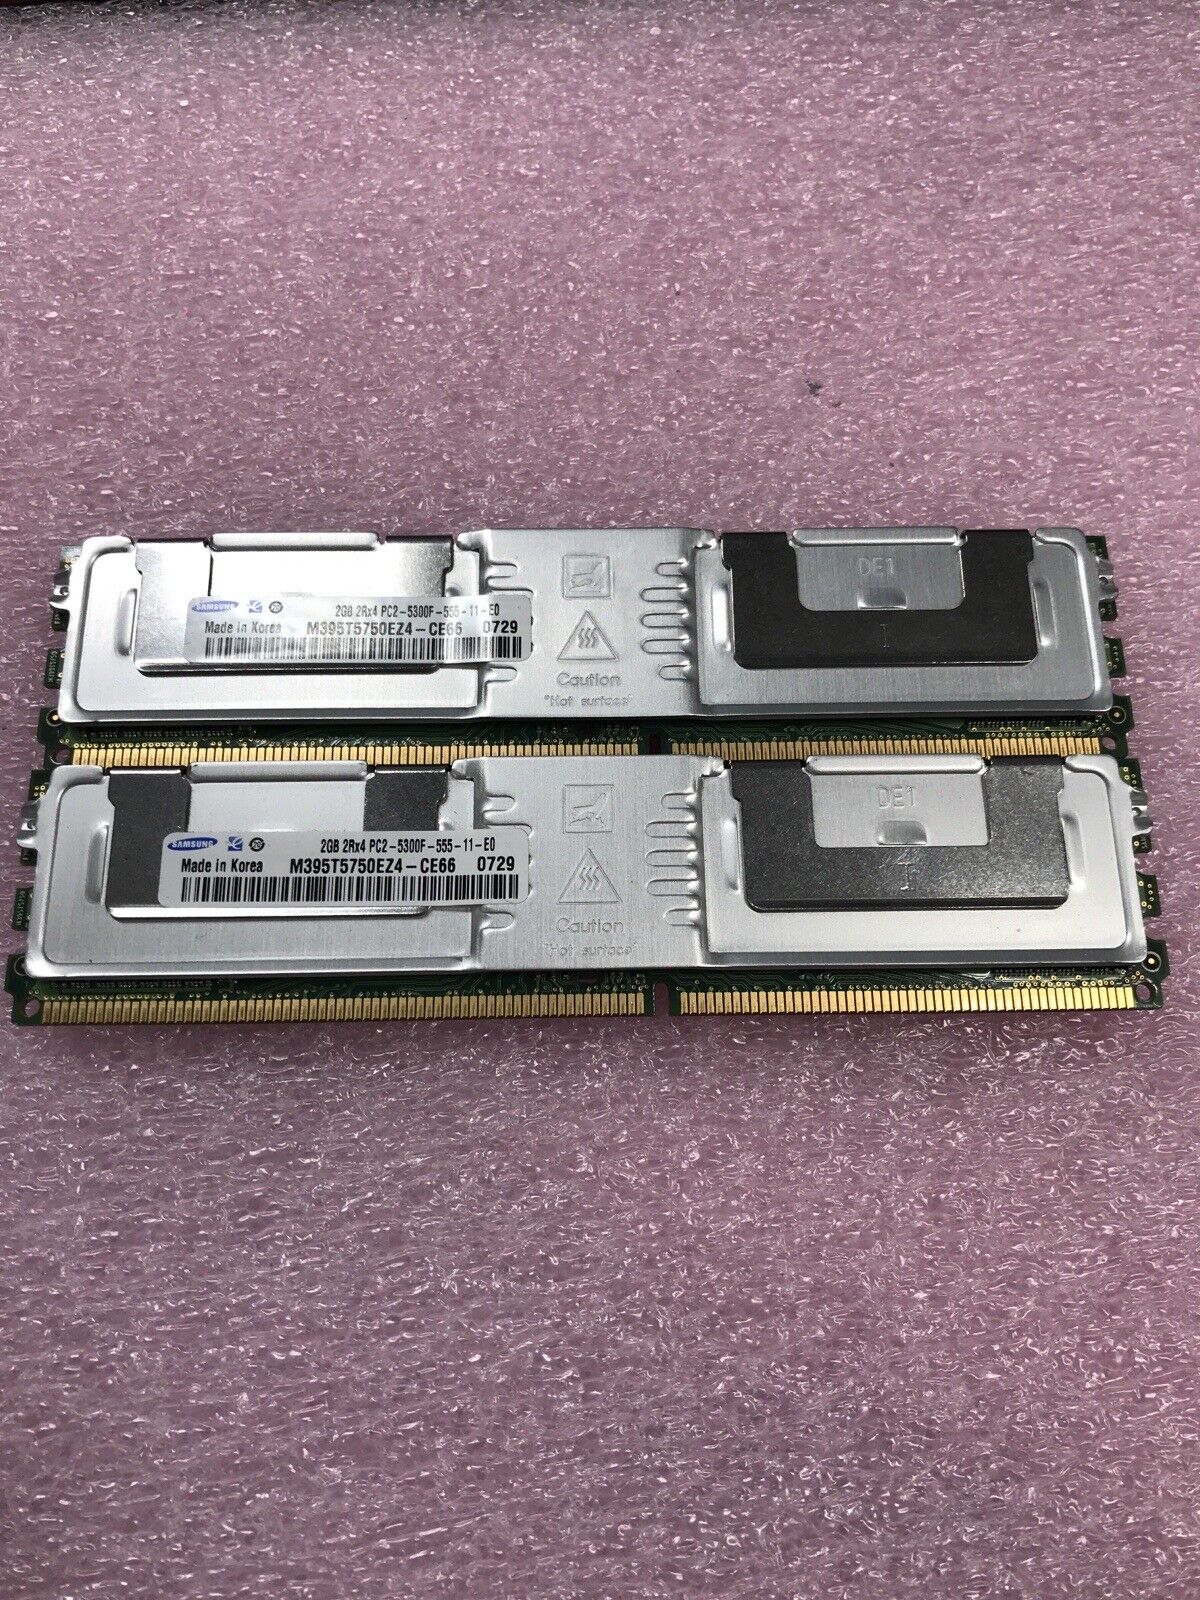 Samsung 4GB Kit 2x4GB 2Rx4 PC2-5300F-555-11-E0 Server Ram M395T5750EZ4-CE66